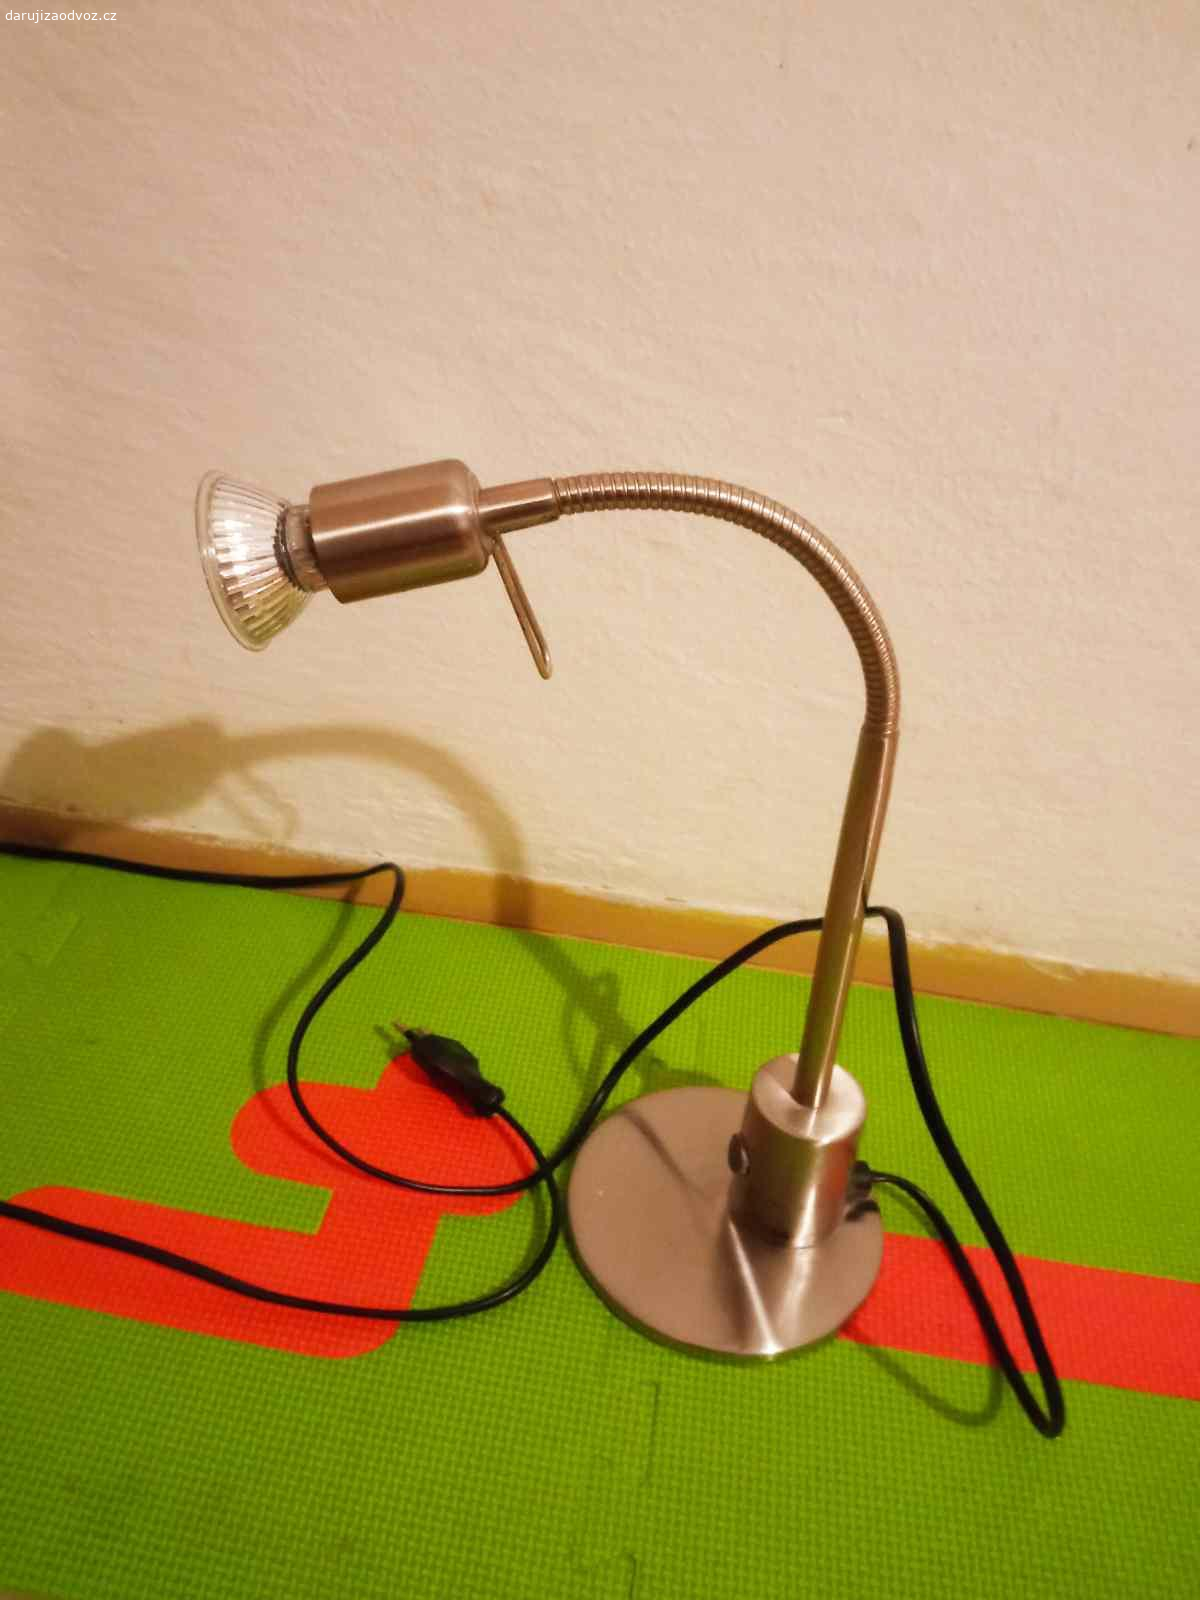 Funkční lampička EGLO. Lampa funkční  ohýbací, / viz . co je na fotu/, žárovku vyměnit, nechávám pro ilustraci.
Možno zaslat za 119 korun.